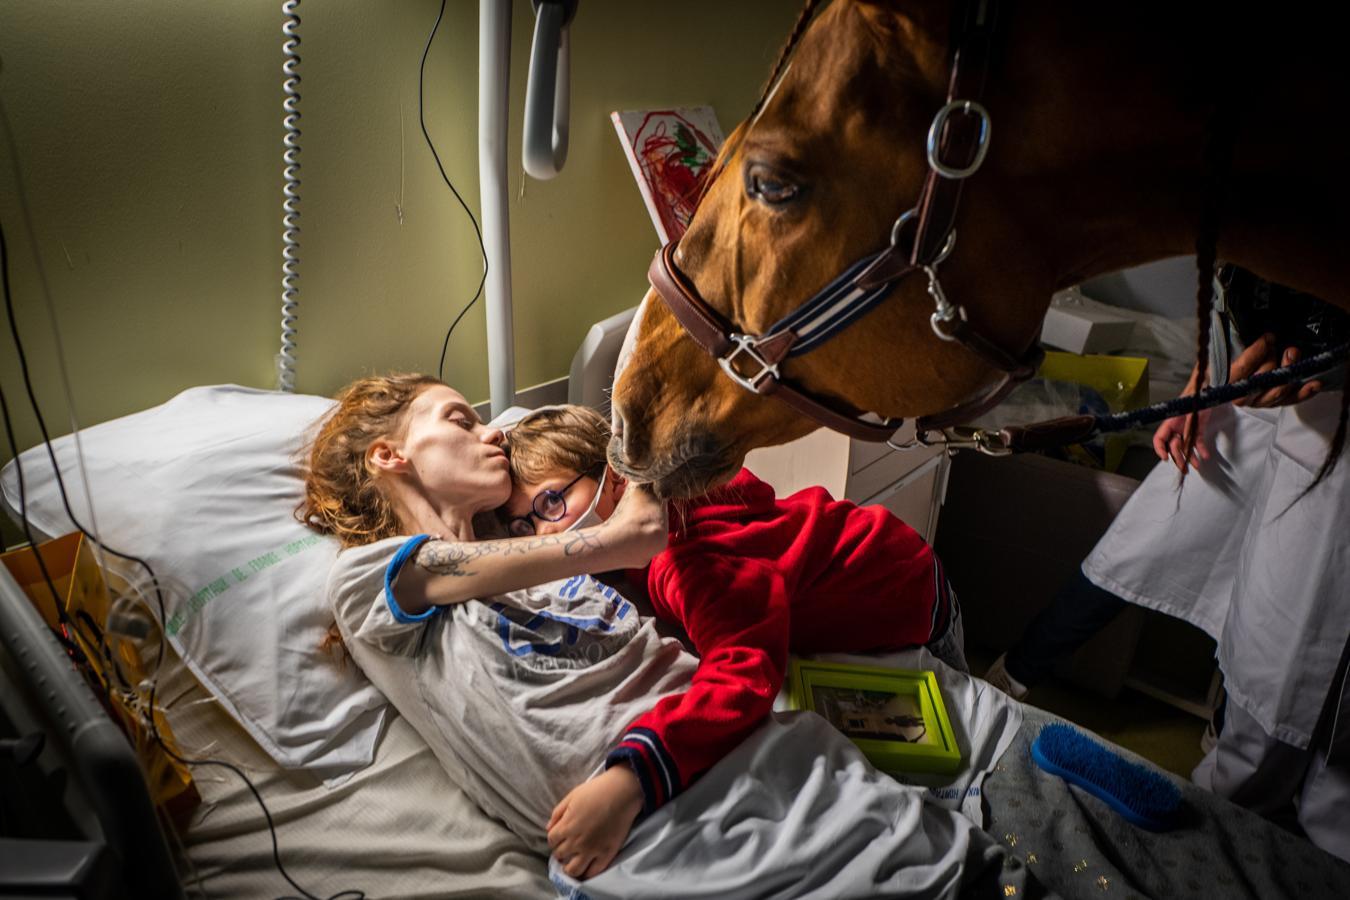 Una mujer con metástasis terminal abrazaa a su hijo en un hotel de Francia. Junto a ellos un caballo utilizado a modo de terapia. Nominada en la categoría de temas contemporáneos. 